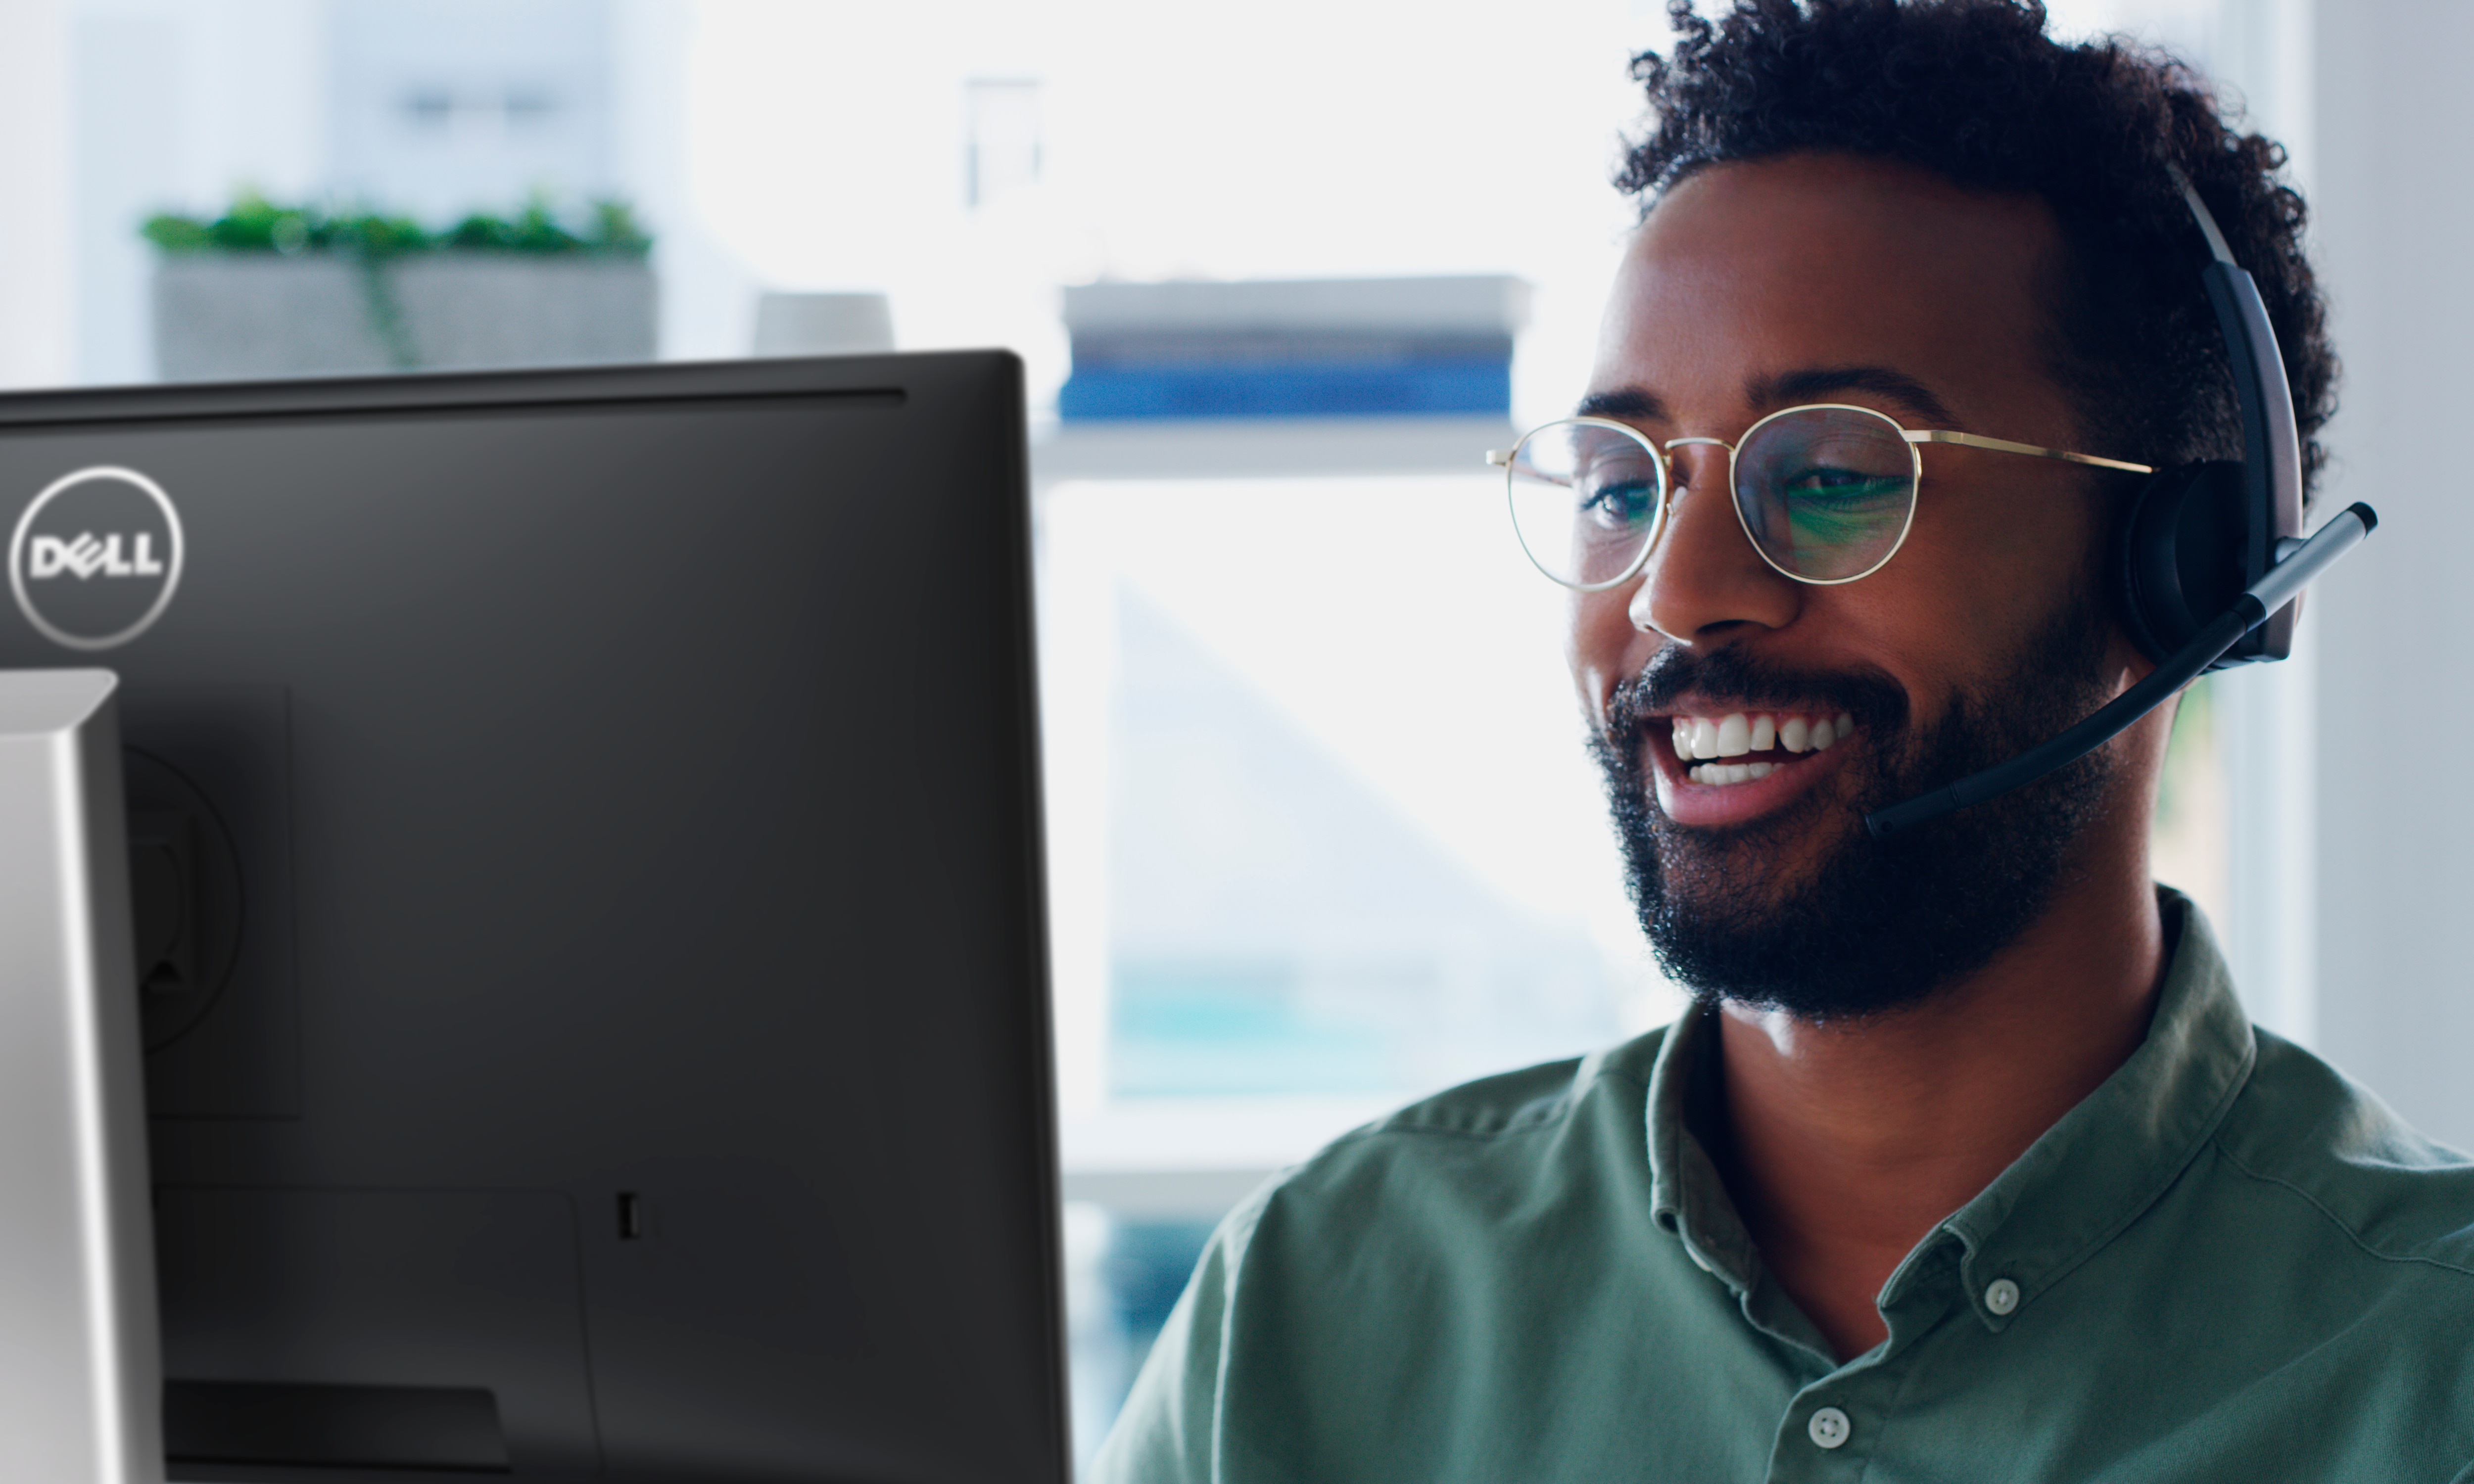 Smilende mand med briller, der har et headset på hovedet, og som bruger en Dell-skærm.